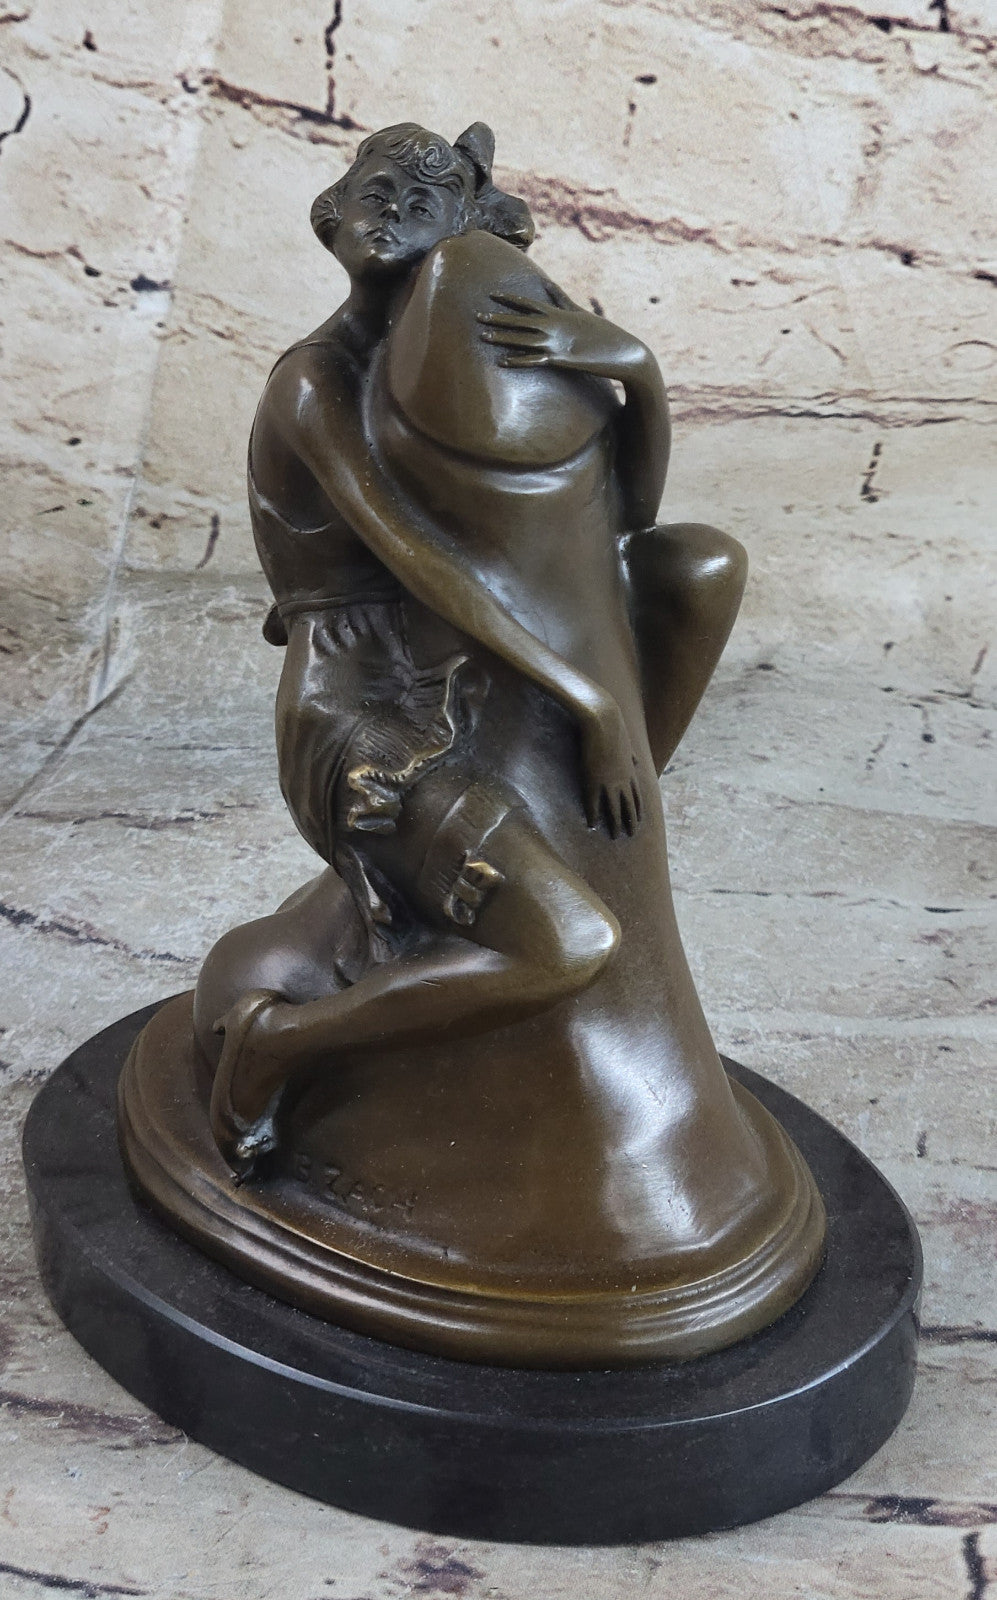 Woman Erotic Fantasy Nude Penis Bronze Sculpture Statue Figurine Figure Hotcast